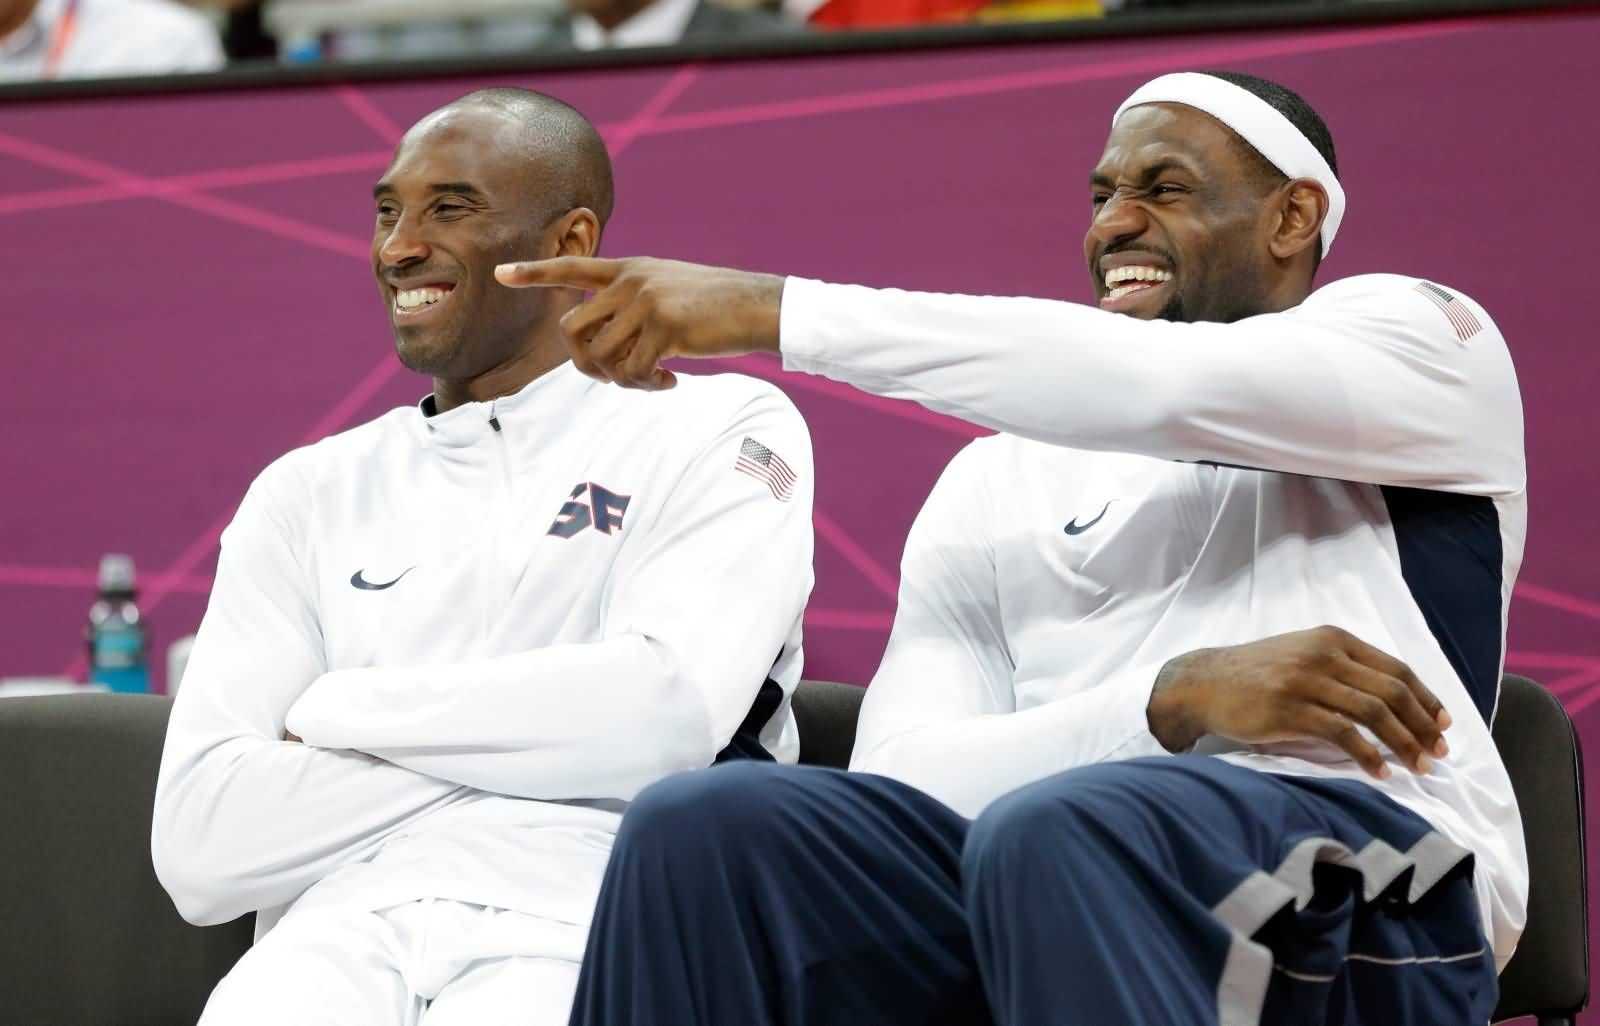 "Pas même dans mon top 10": l'ancien champion de la NBA fait une déclaration bizarre autour de Kobe Bryant et LeBron James